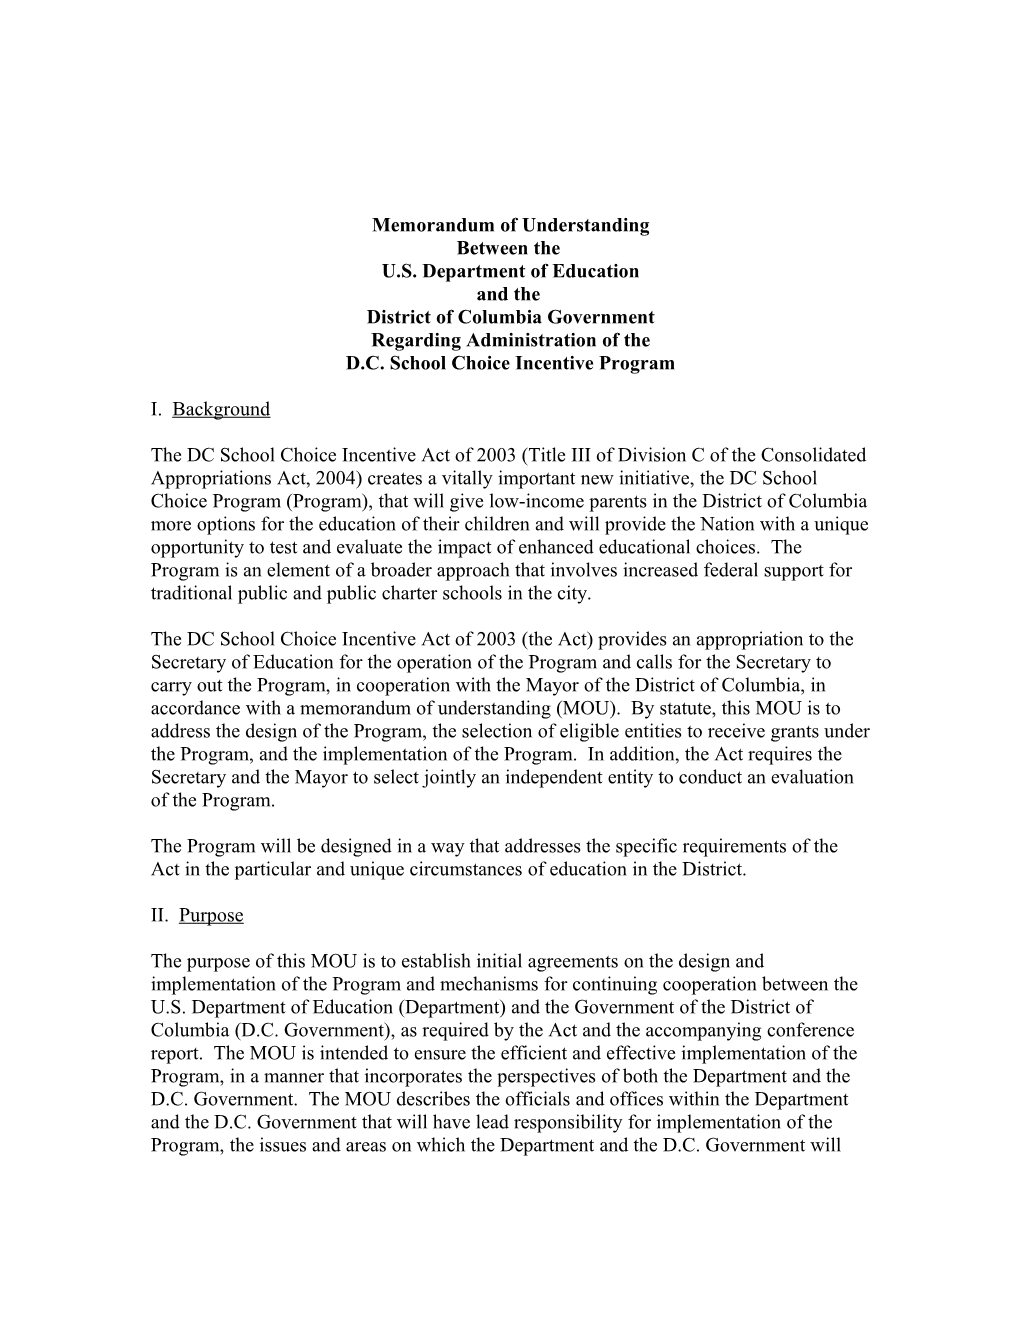 Memorandum of Understanding DC School Choice Incentive Program (Msword)